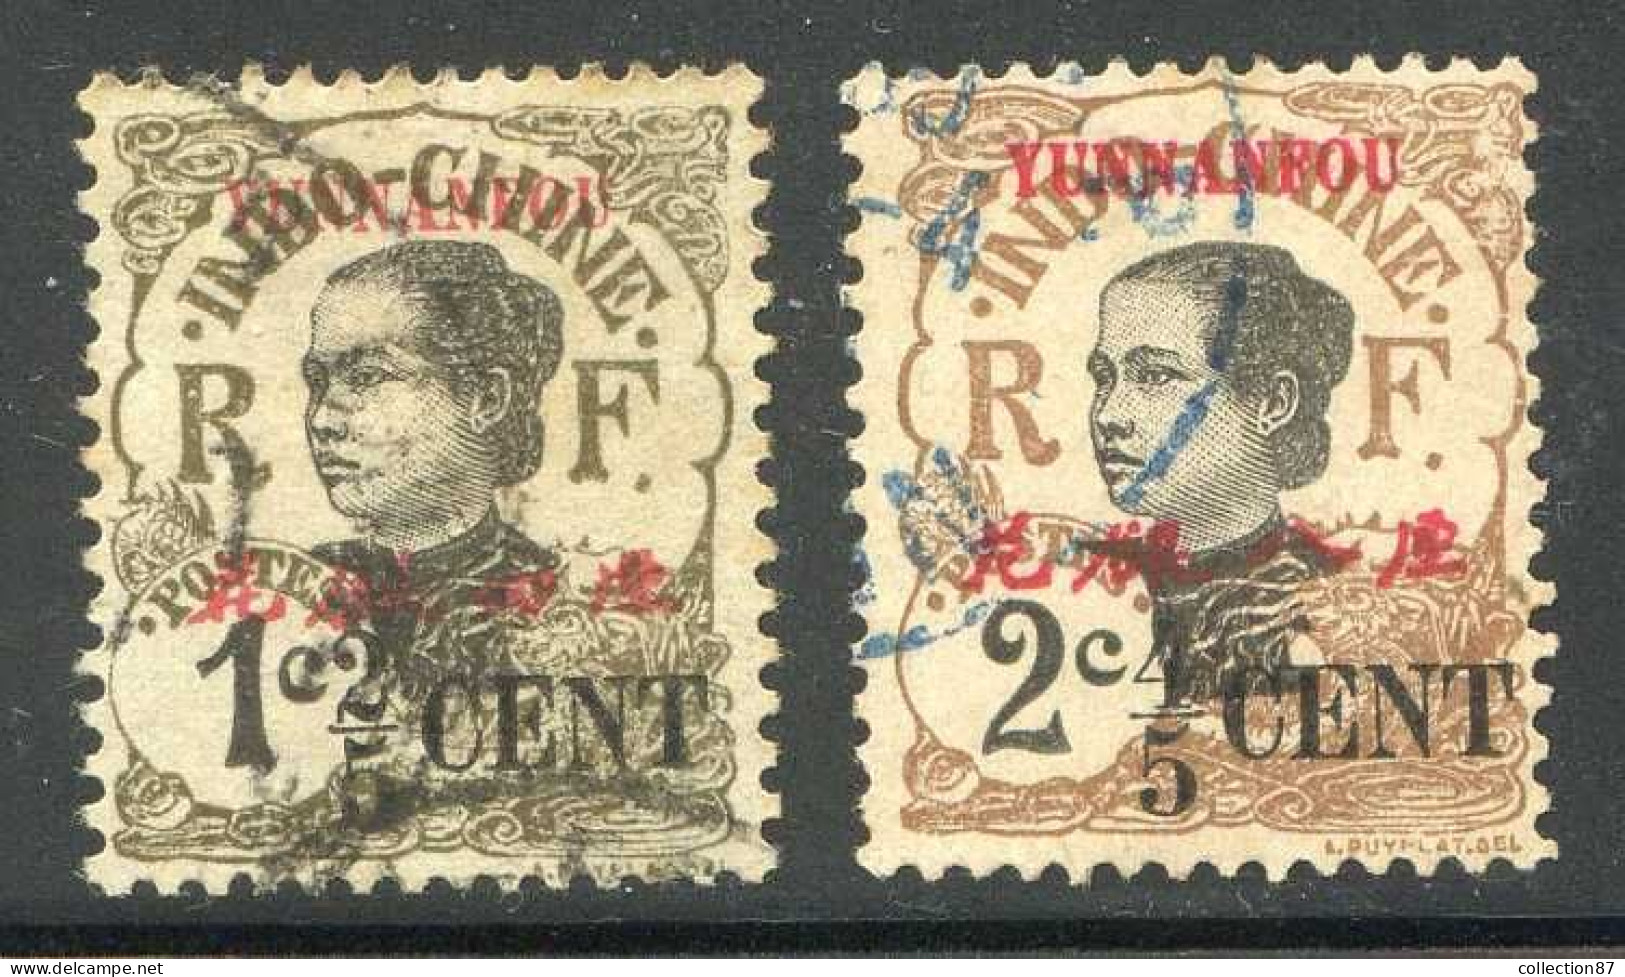 Réf 82 > YUNNANFOU < N° 50 + 51 Ø Oblitéré < Ø Used -- - Used Stamps